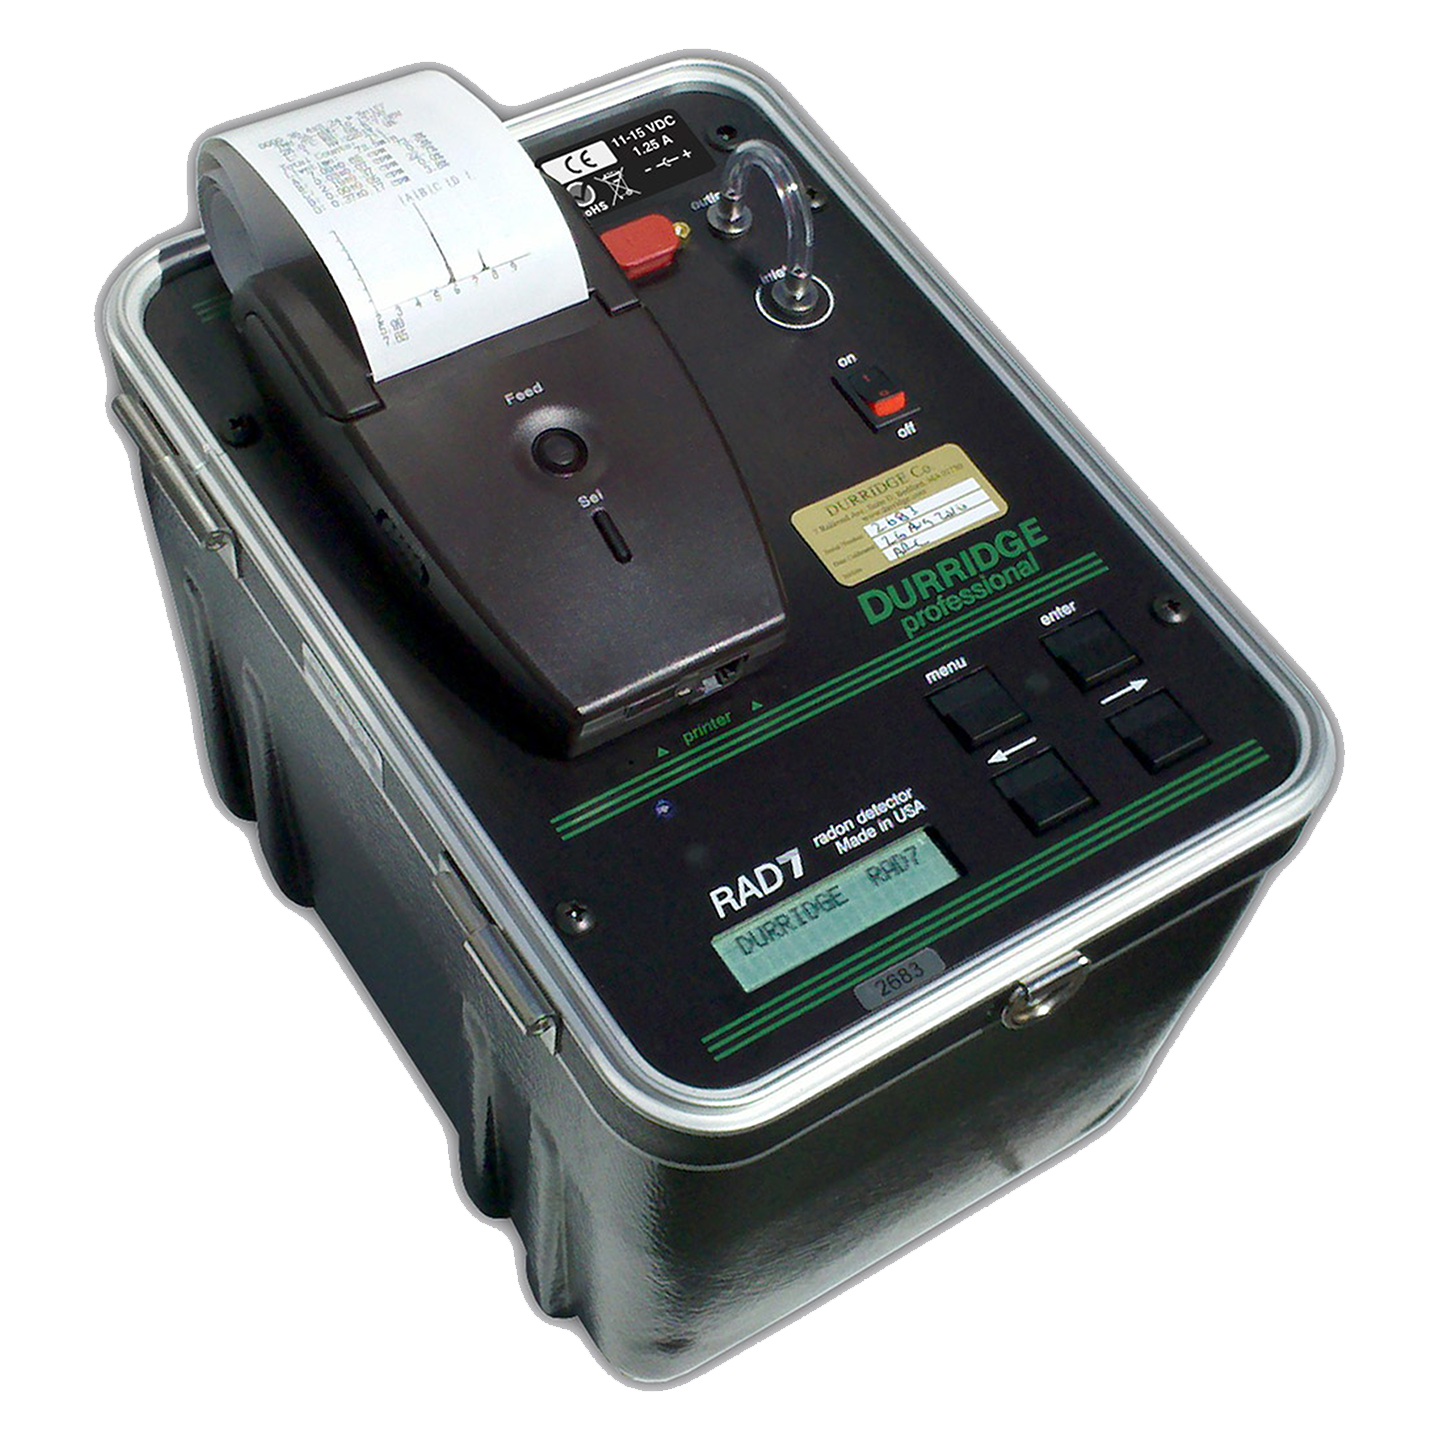 Detector de radón EcoQube con resultados en 10 minutos, WIFI y app. -  SECURCCTV